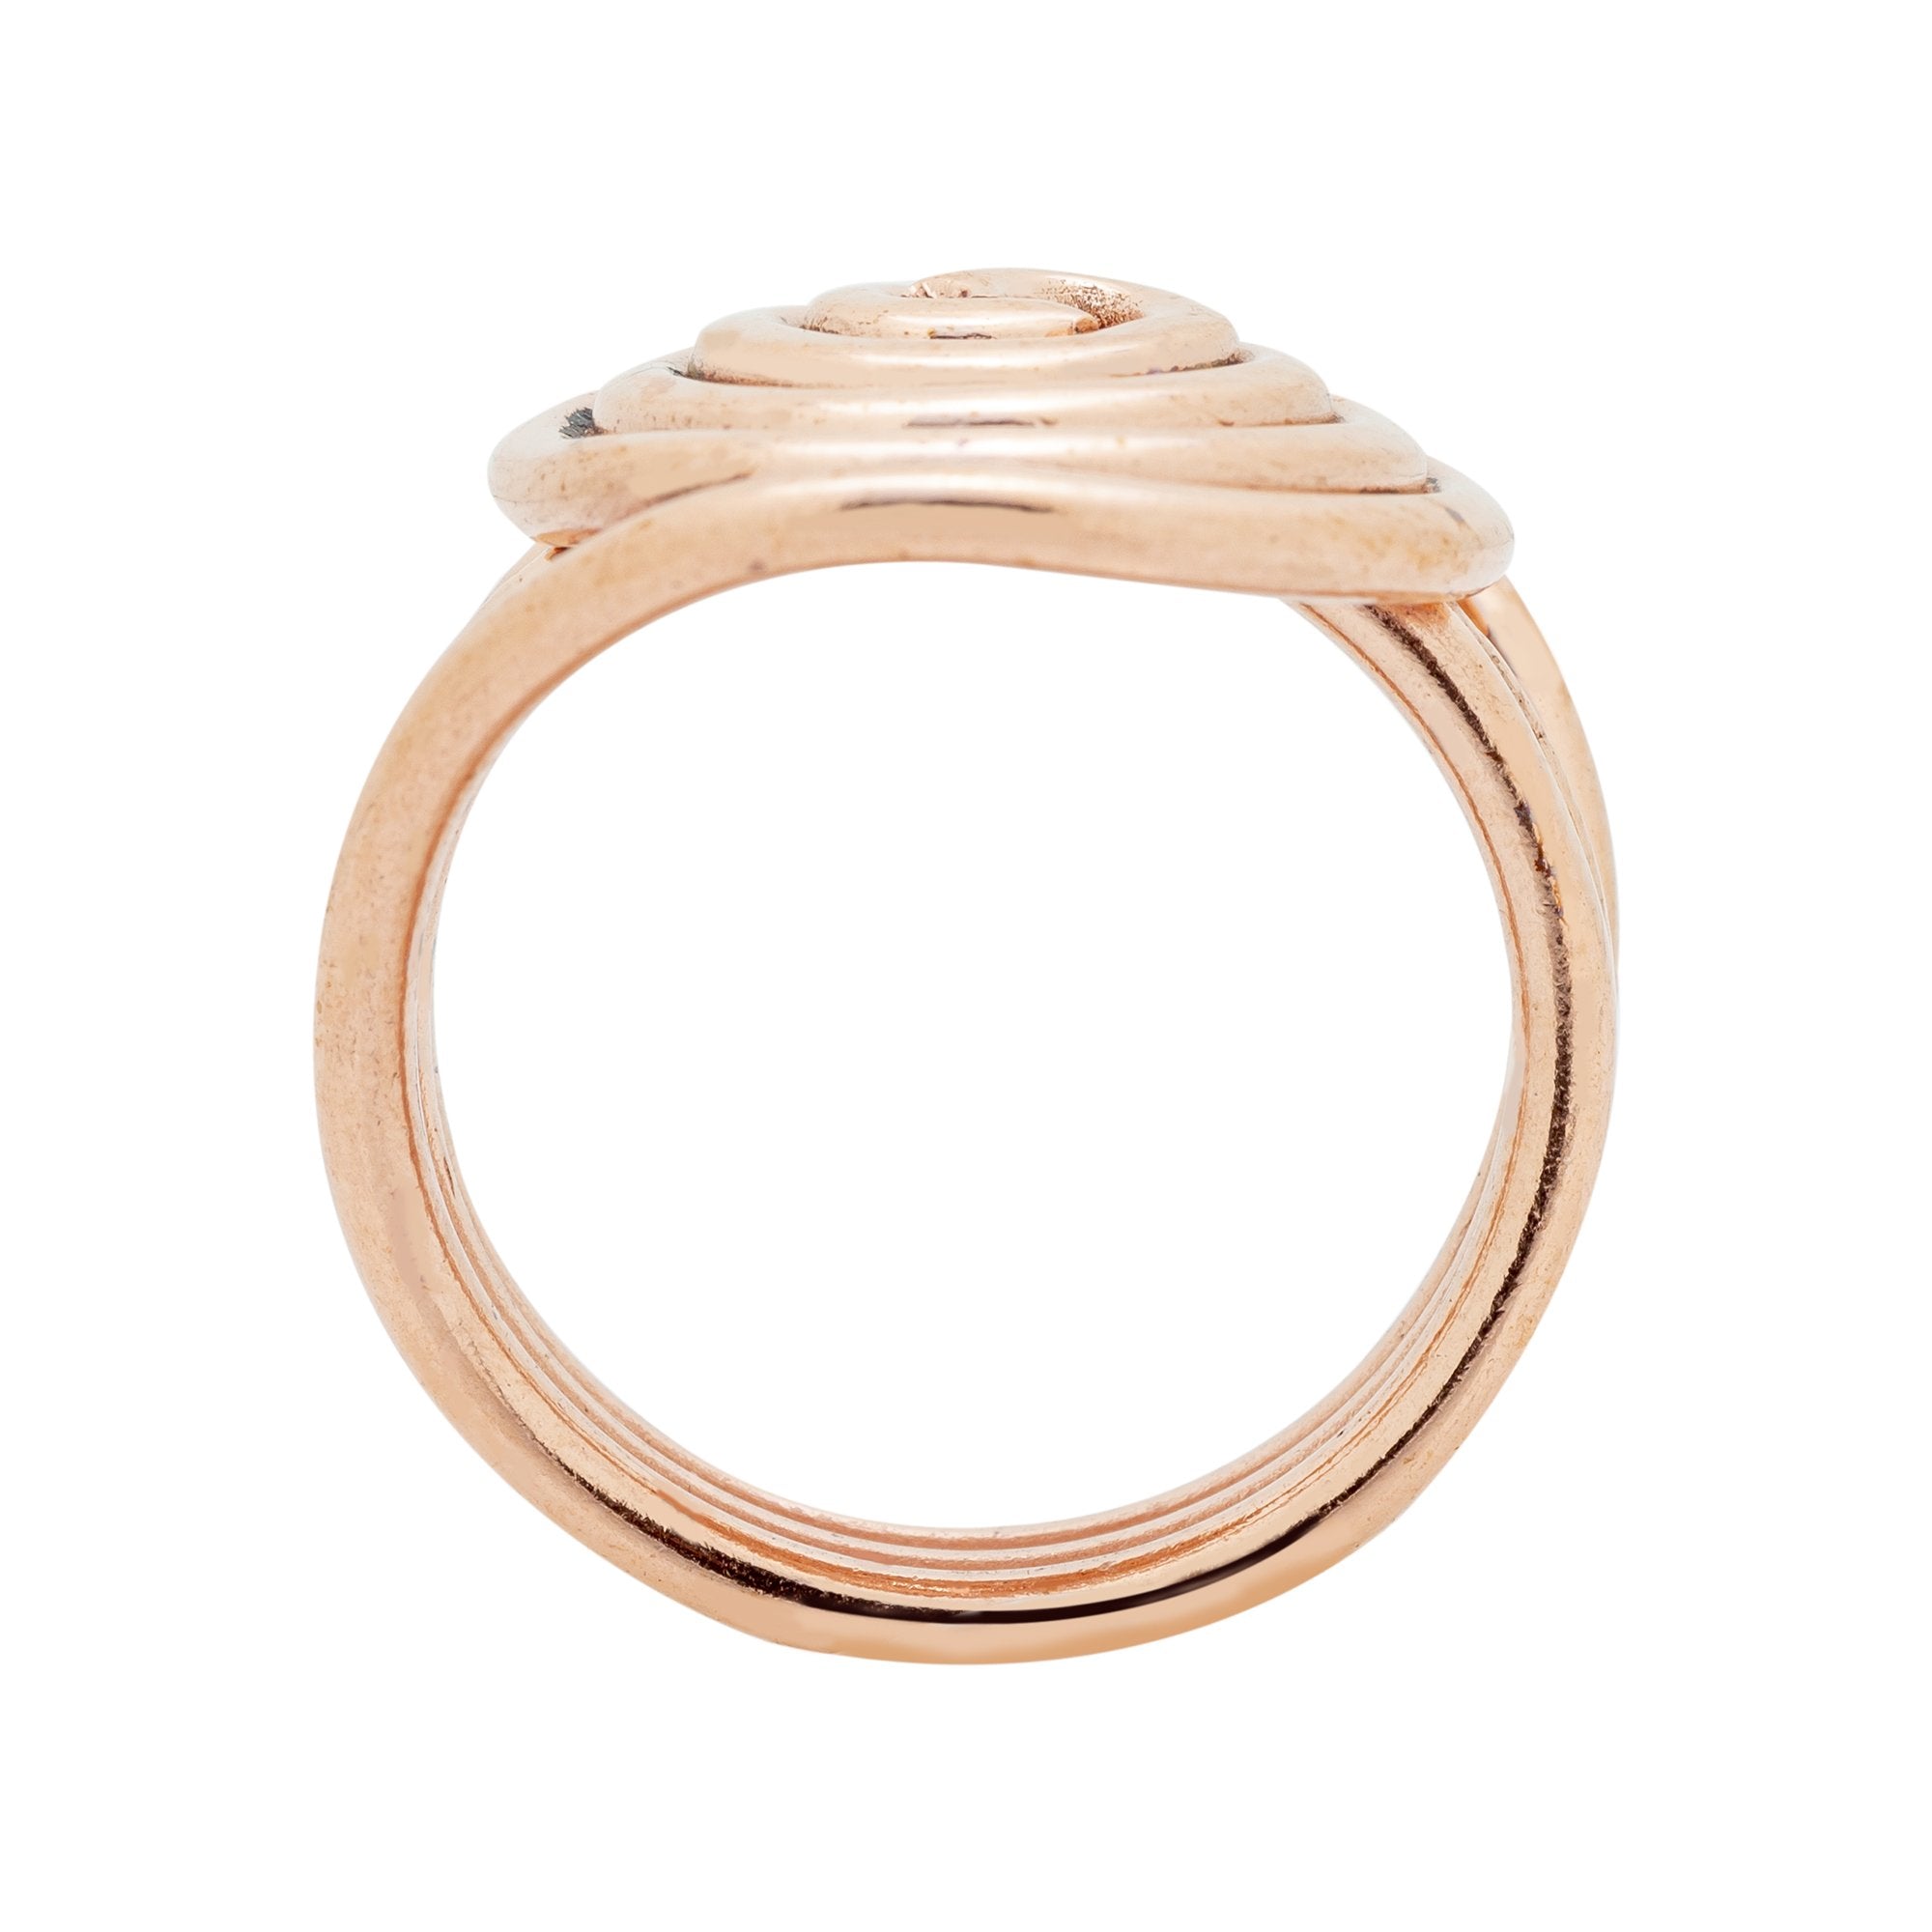 RG.FEL.4001 - Copper Ring